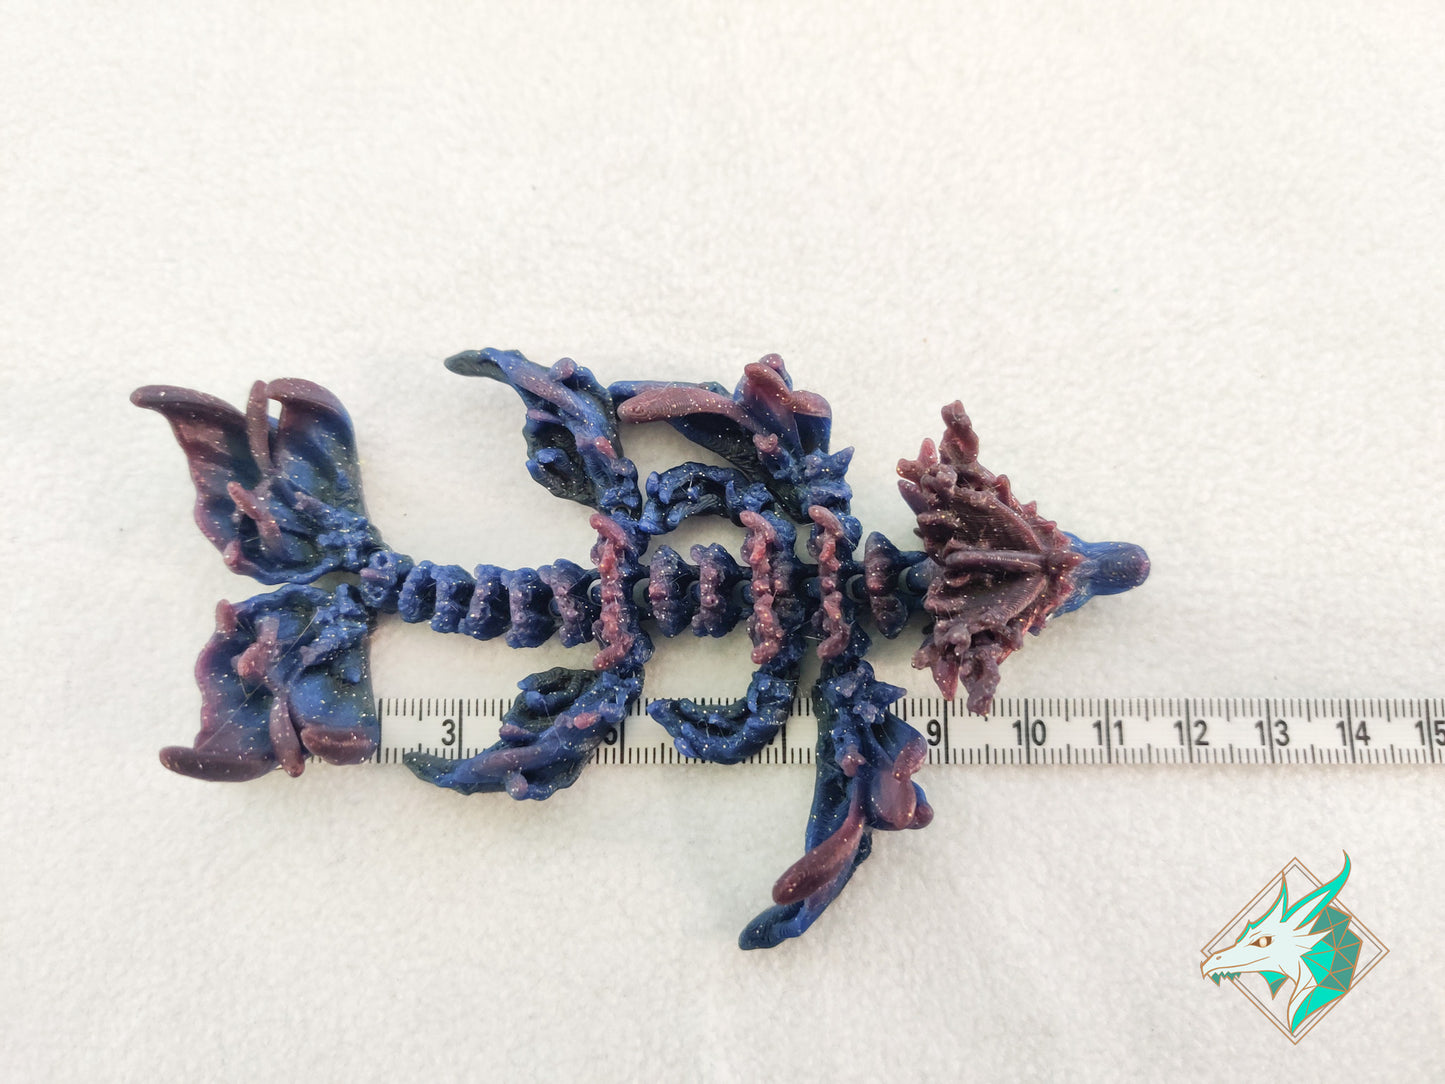 Hatchling Coral Dragon - Pocket Size